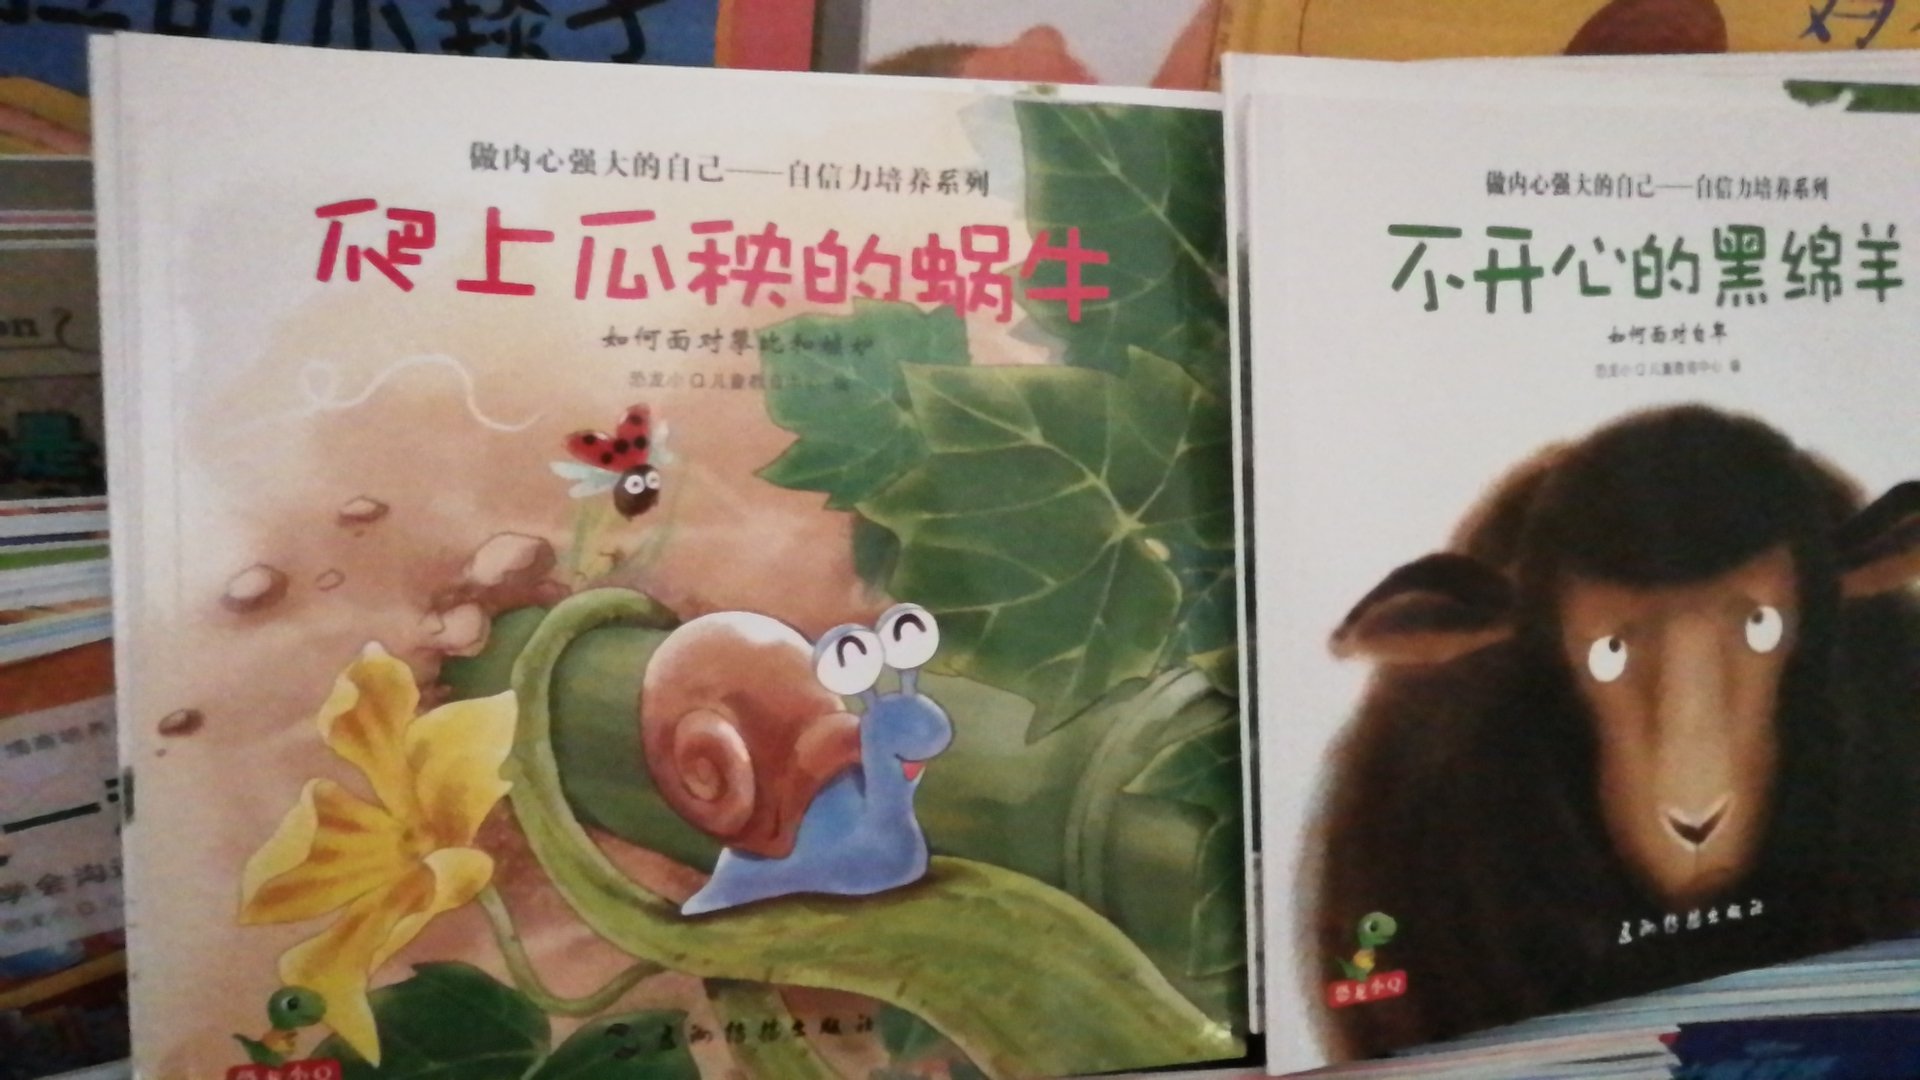 恐龙小~系列的书收了好几套故事特别浅显讲故事的形式让孩子知道道理特别好